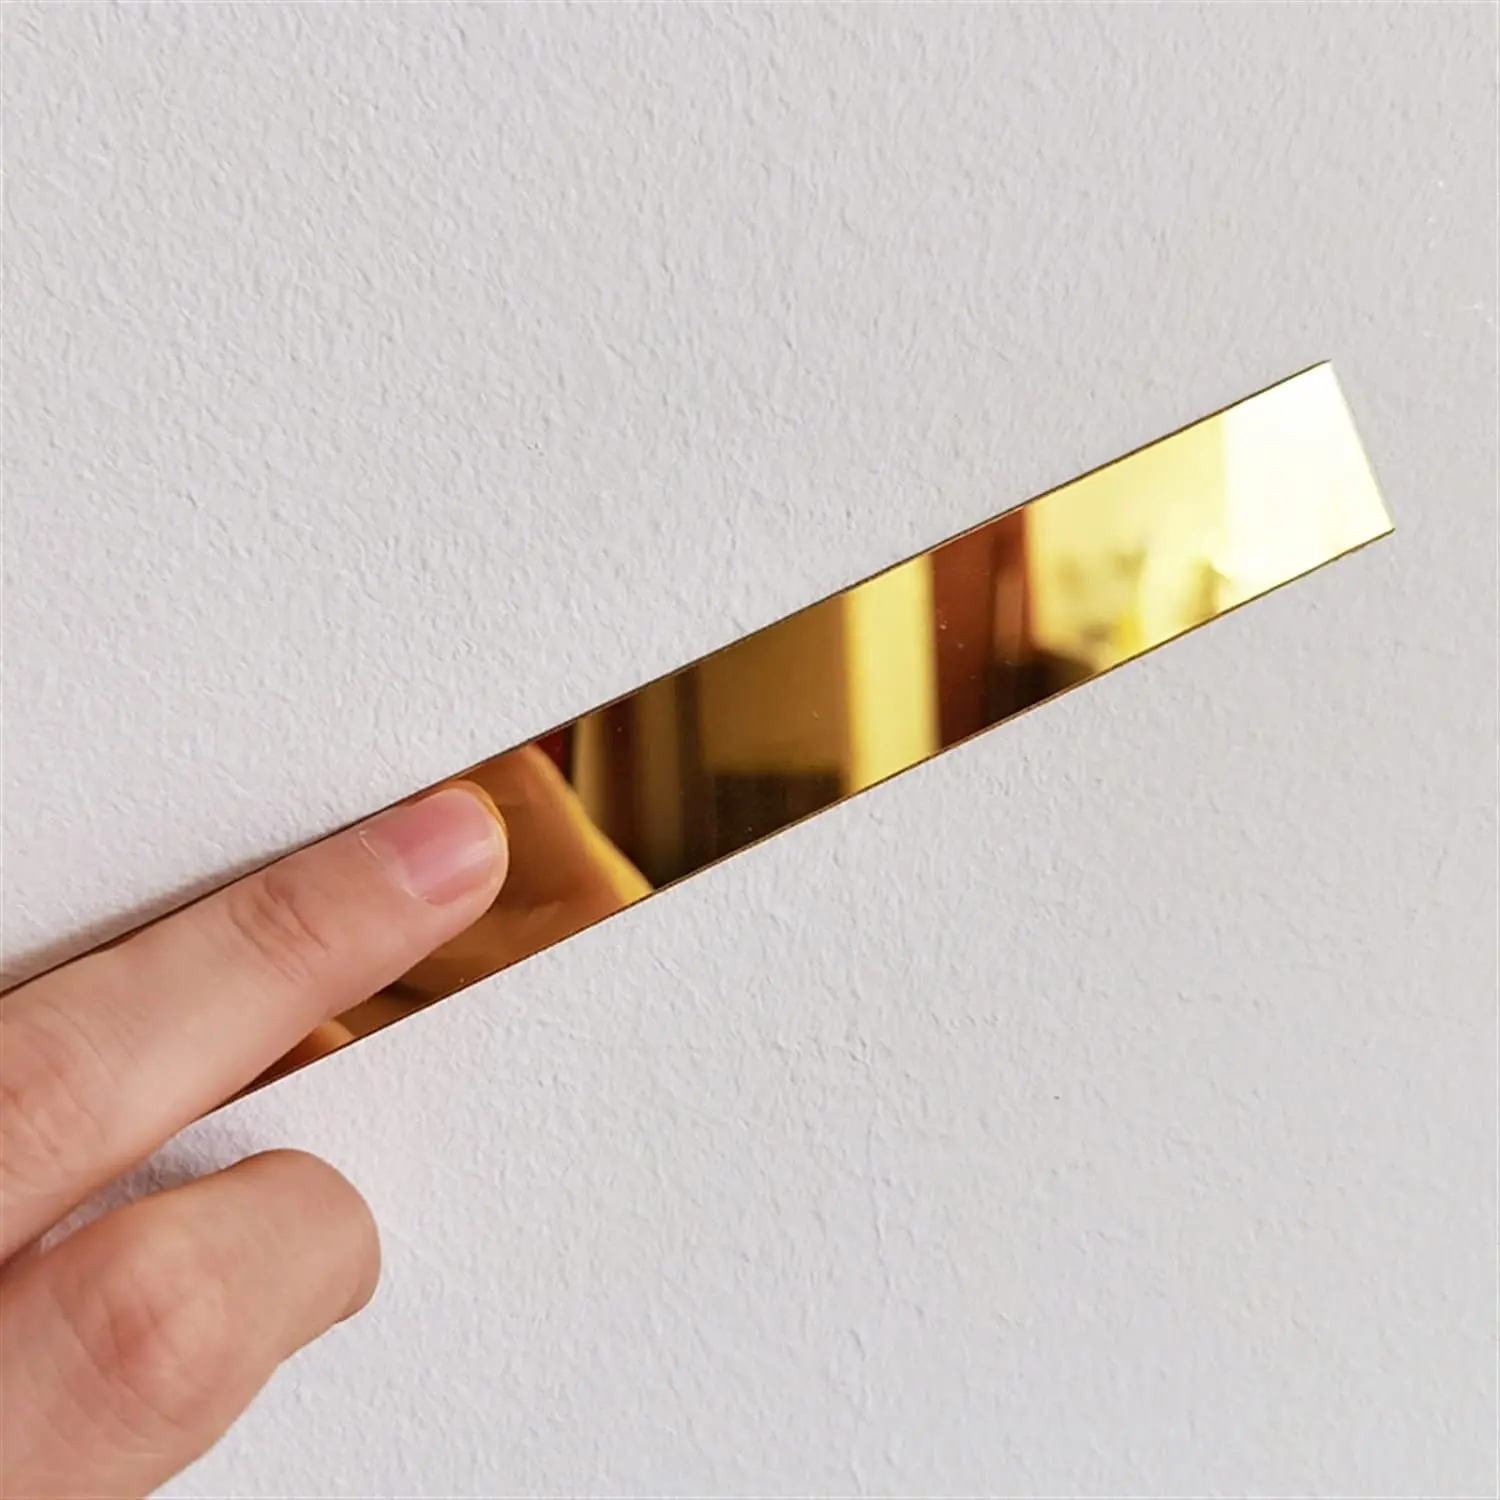 Formteil & Wand verkleidung | Gold Metalli siertes spiegel ähnliches Finish Peel and Stick für Decken hintergrund Wand möbel Spiegel rahmen